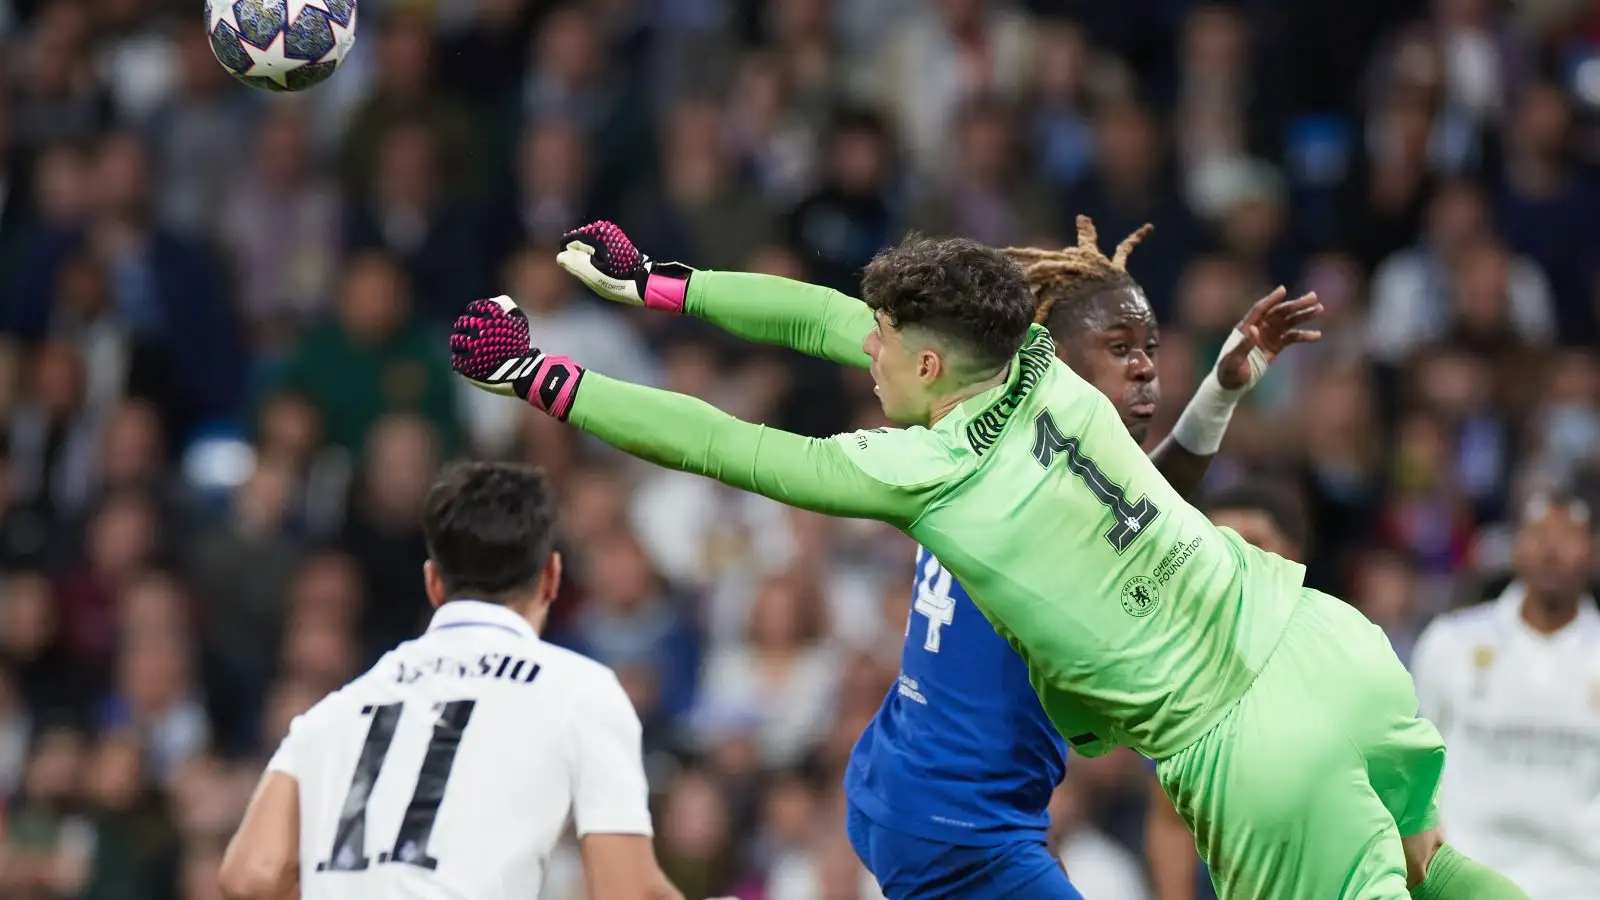 Chelsea goalkeeper Kepa Arrizabalaga punches the ball clear.